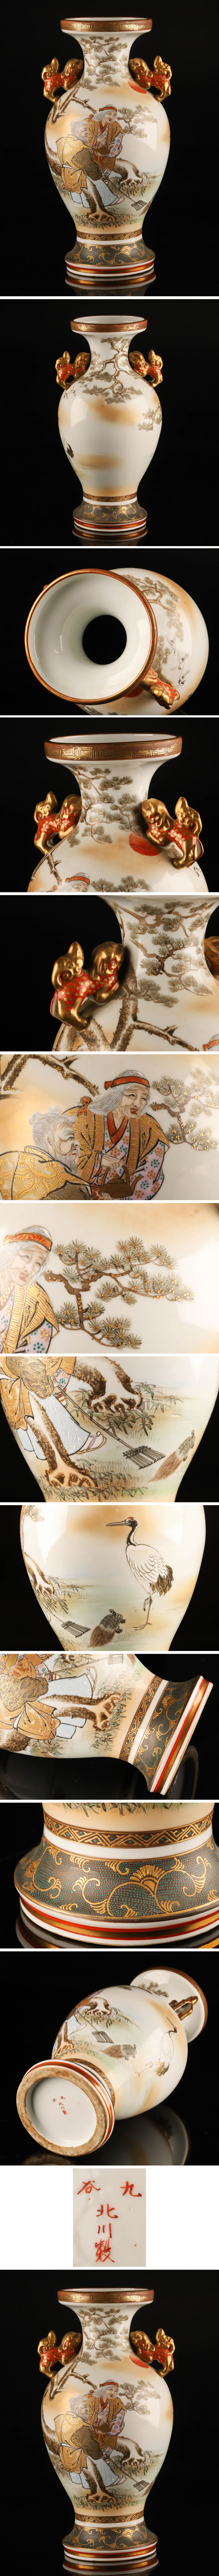 格安超激得九谷焼 北川製 獅子耳金彩青粒手高砂図花瓶 高さ36.5cm KH381 花器、壷